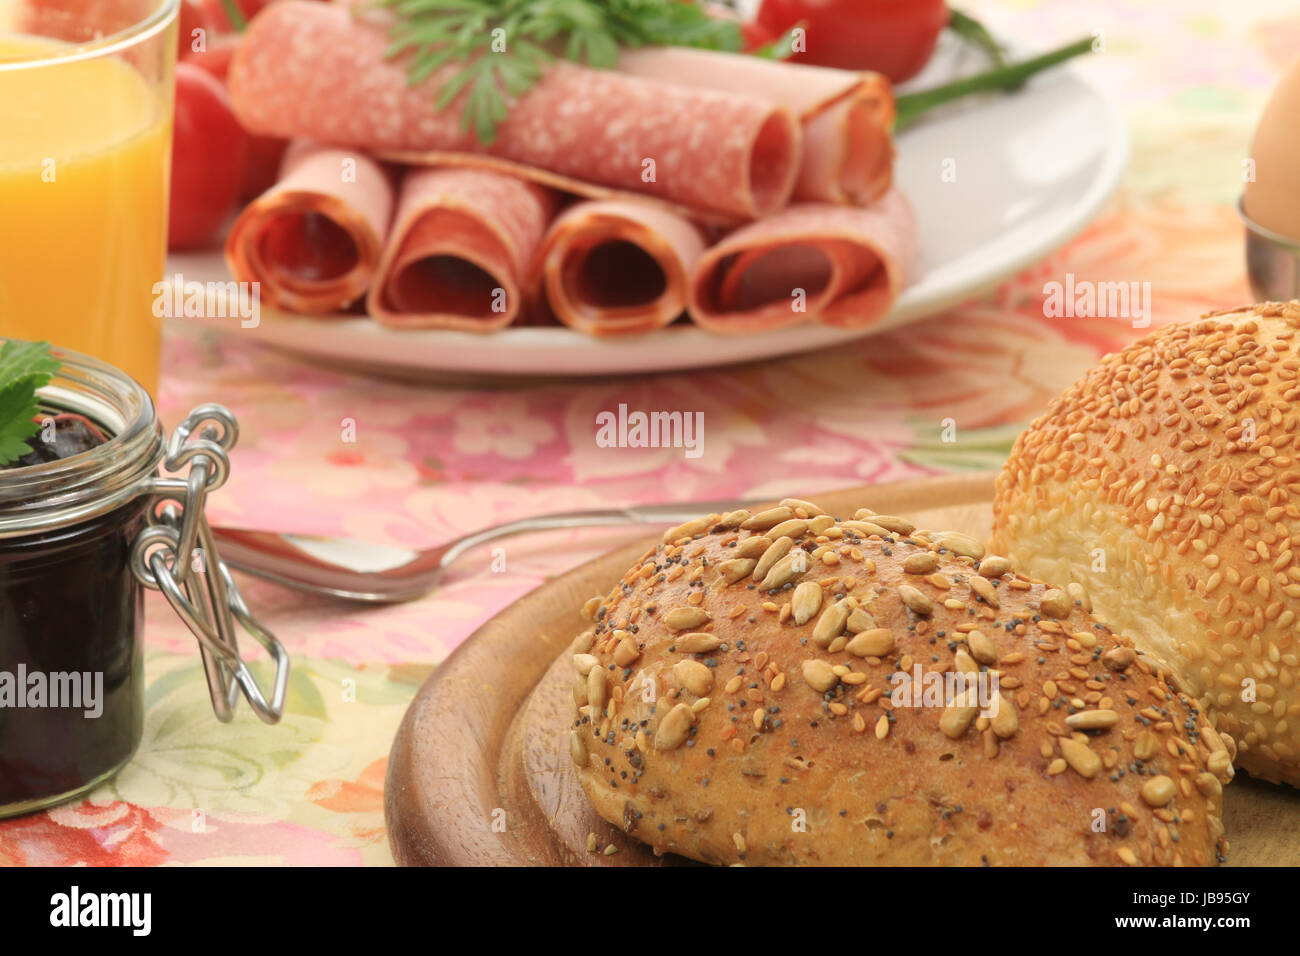 Ausschnitt eines Frühstückstisches mit Brötchen, Aufschnitt, marmellata, Tomaten und Orangensaft Foto Stock